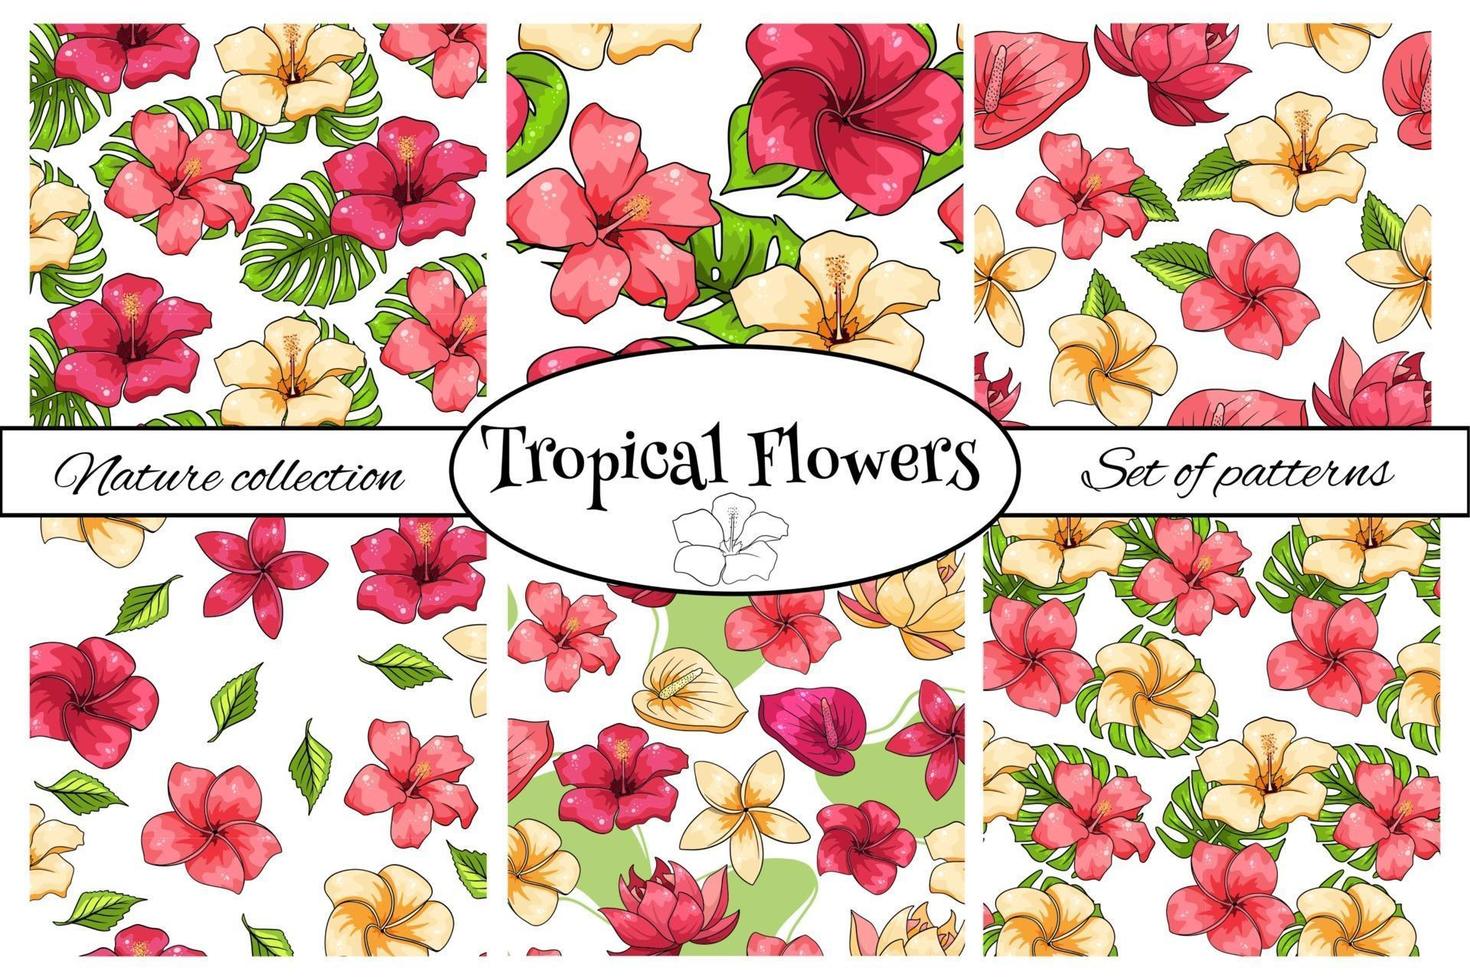 motif tropical avec des fleurs de plantes exotiques et des feuilles en style cartoon vecteur